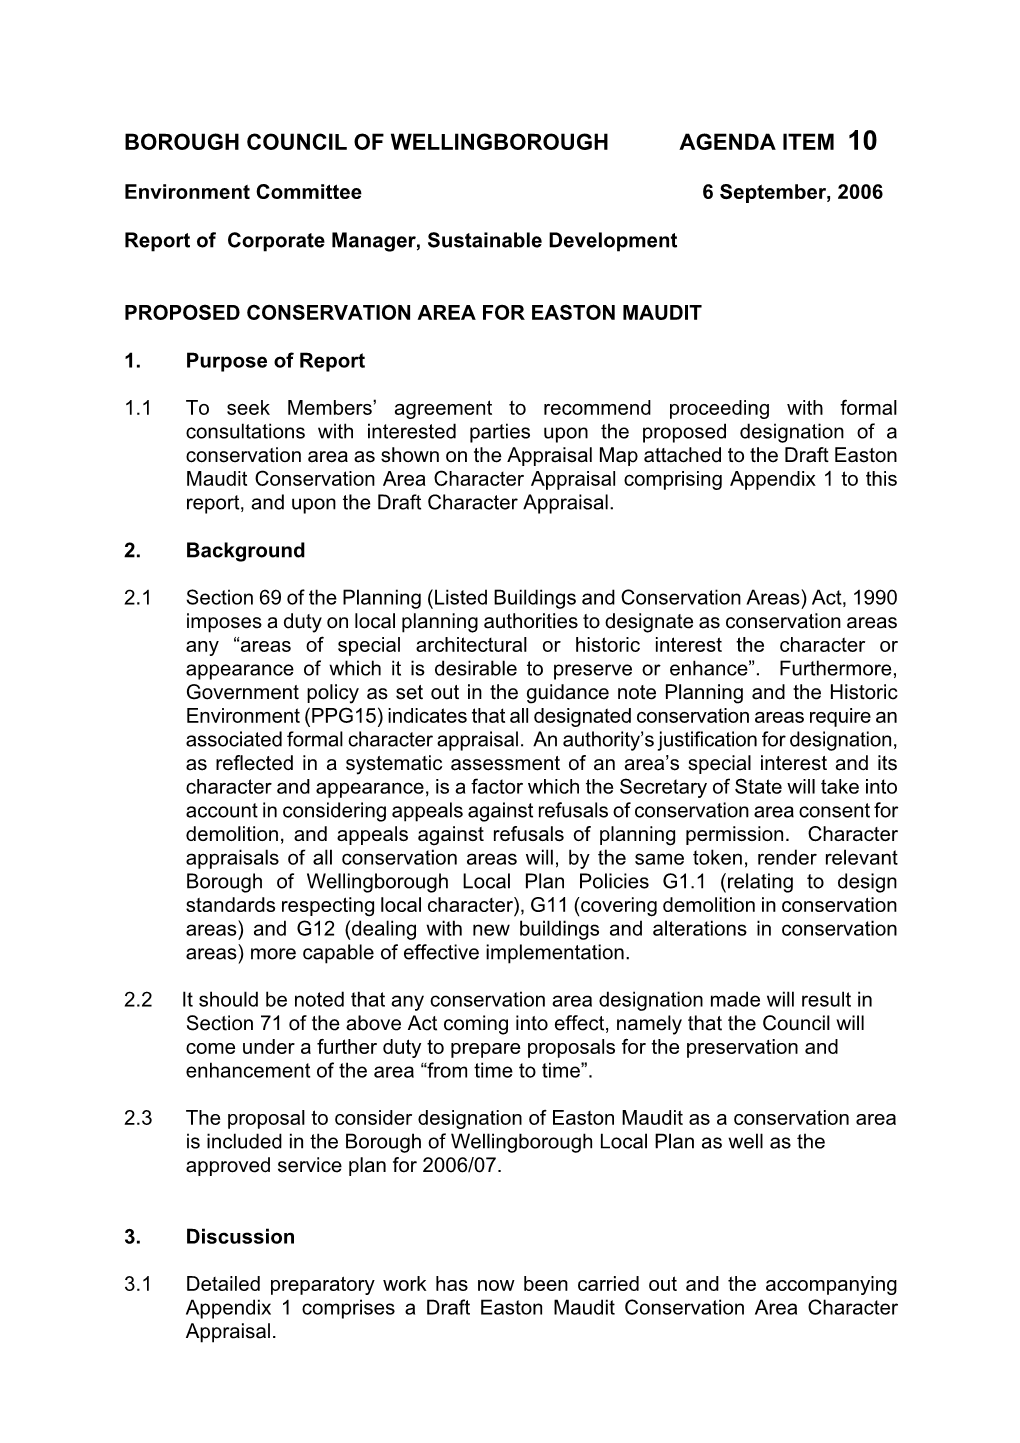 Borough Council of Wellingborough Agenda Item 10